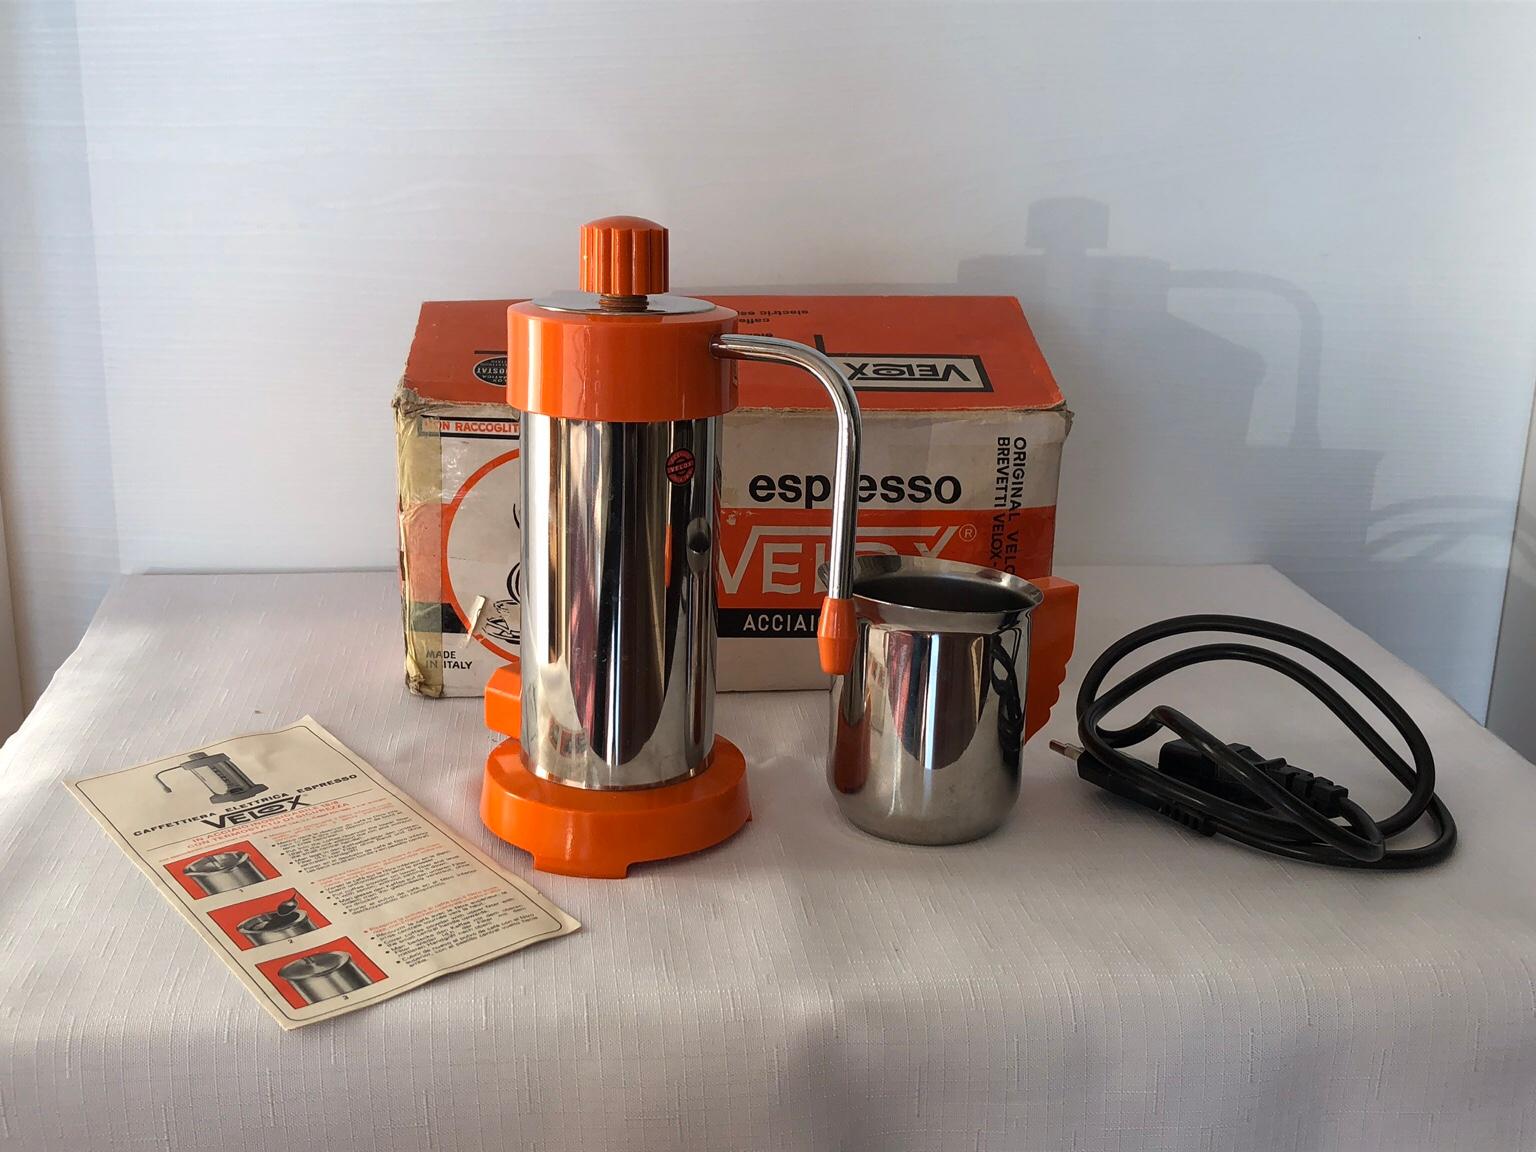 Coppia filtro caffè per moka elettrica VELOX 2 tazze